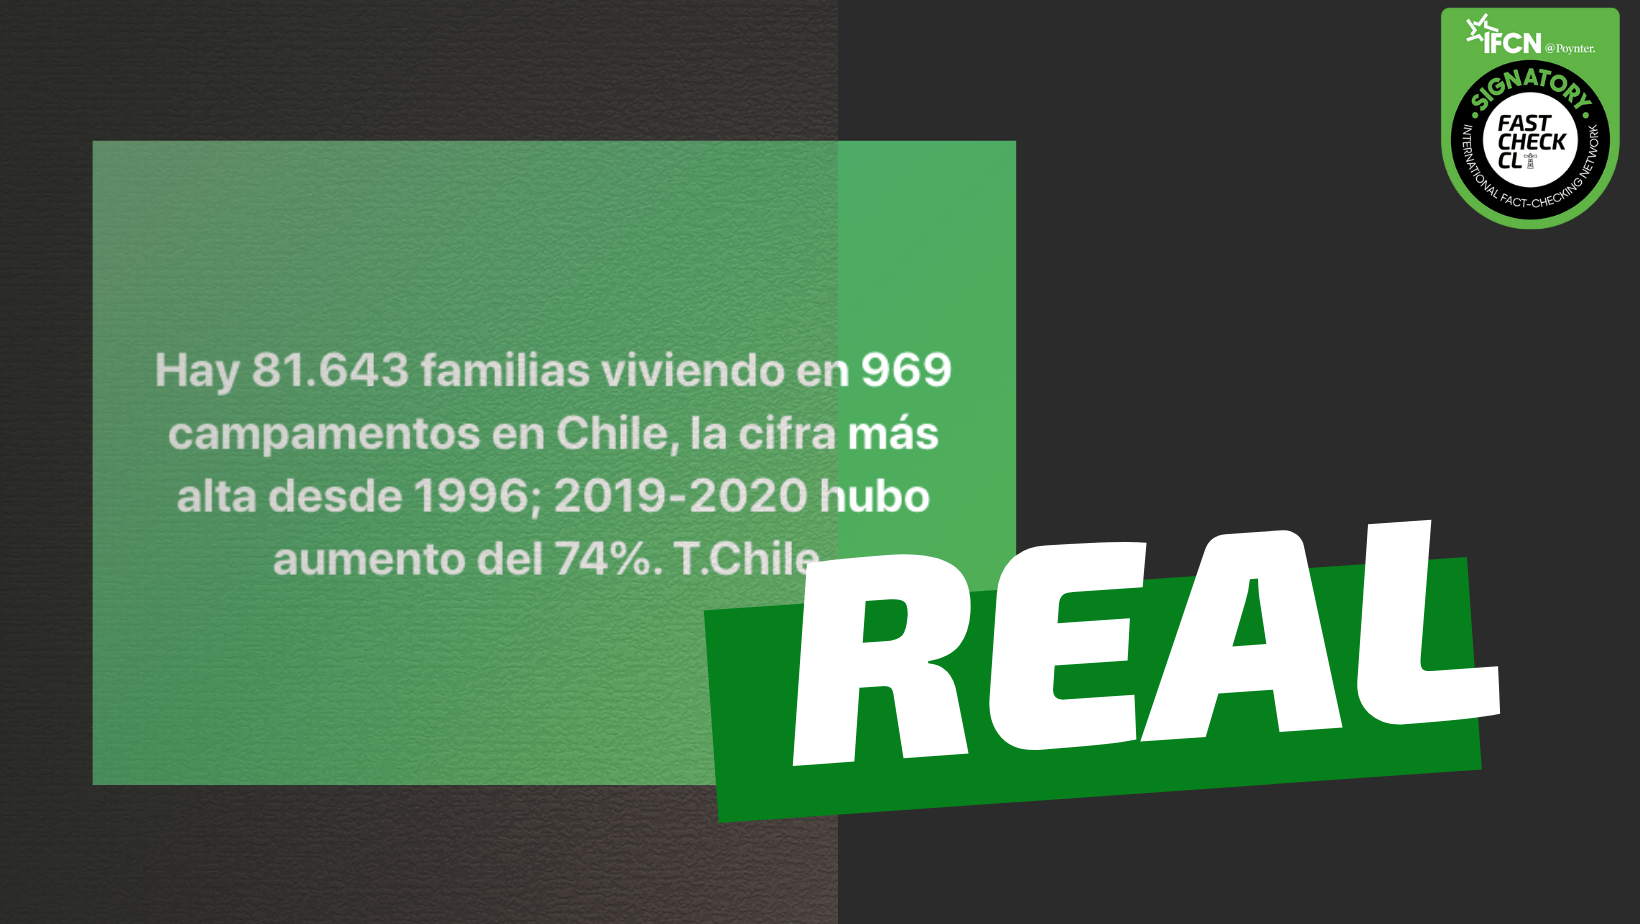 You are currently viewing Hay 81.643 familias viviendo en 969 campamentos en Chile: #Real